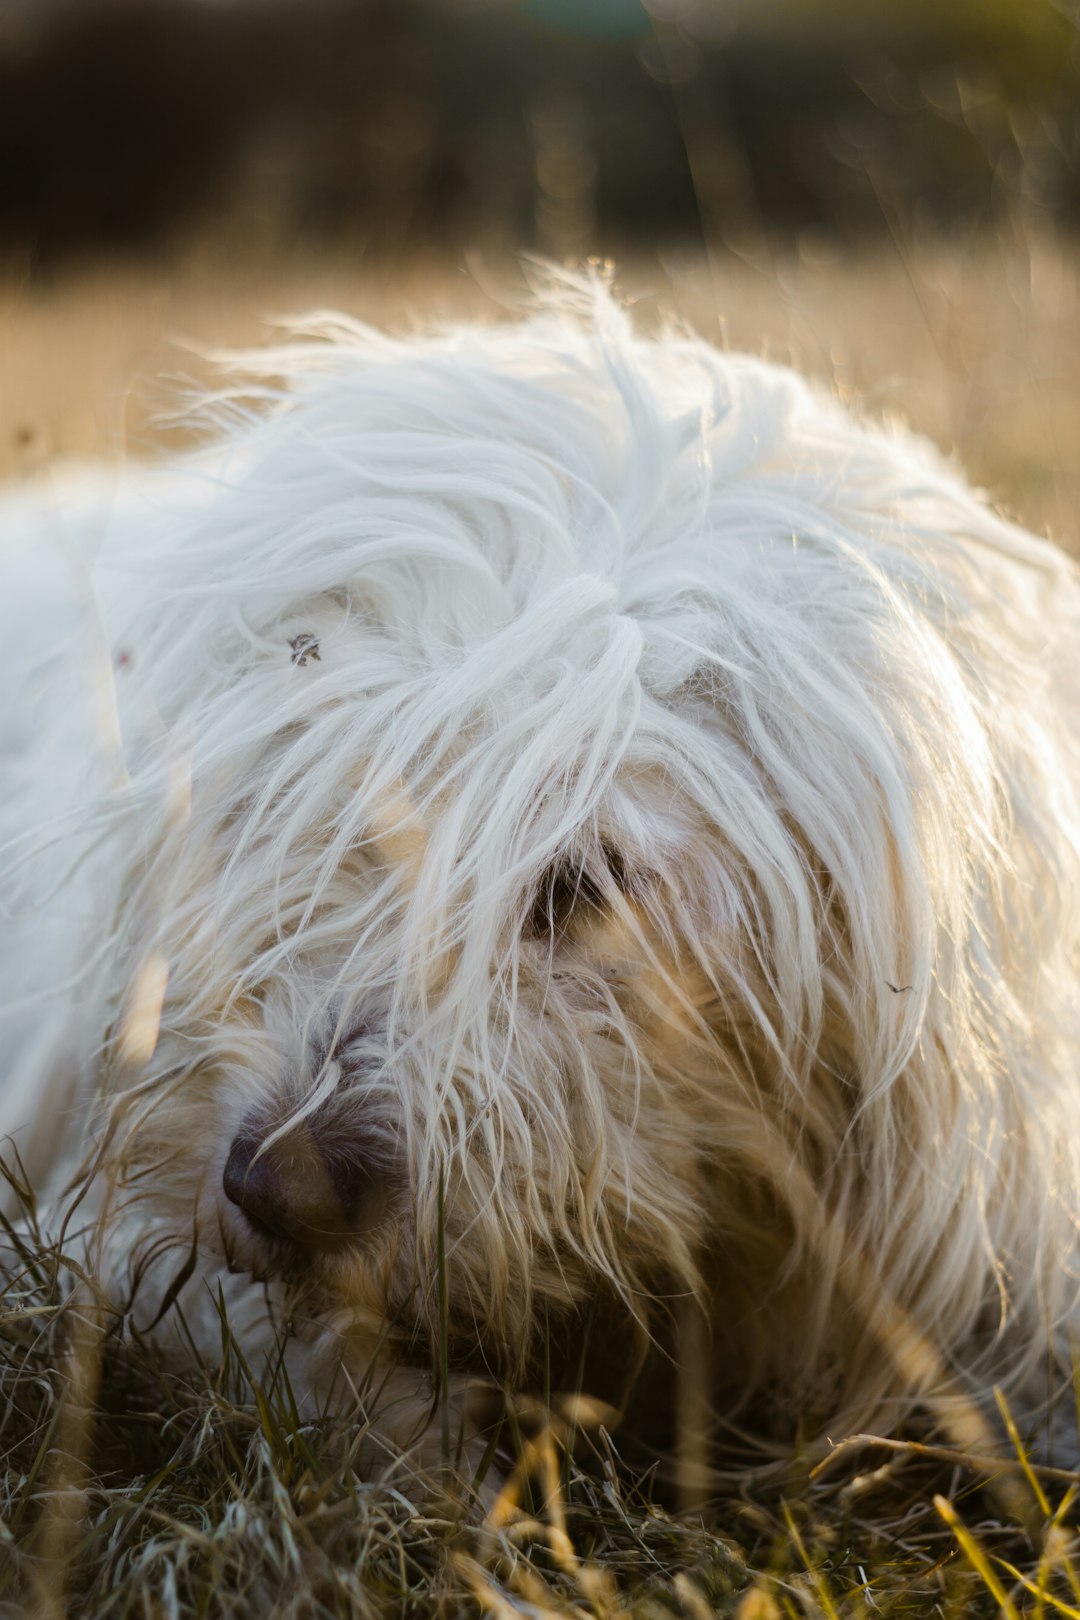 white long coated small dog